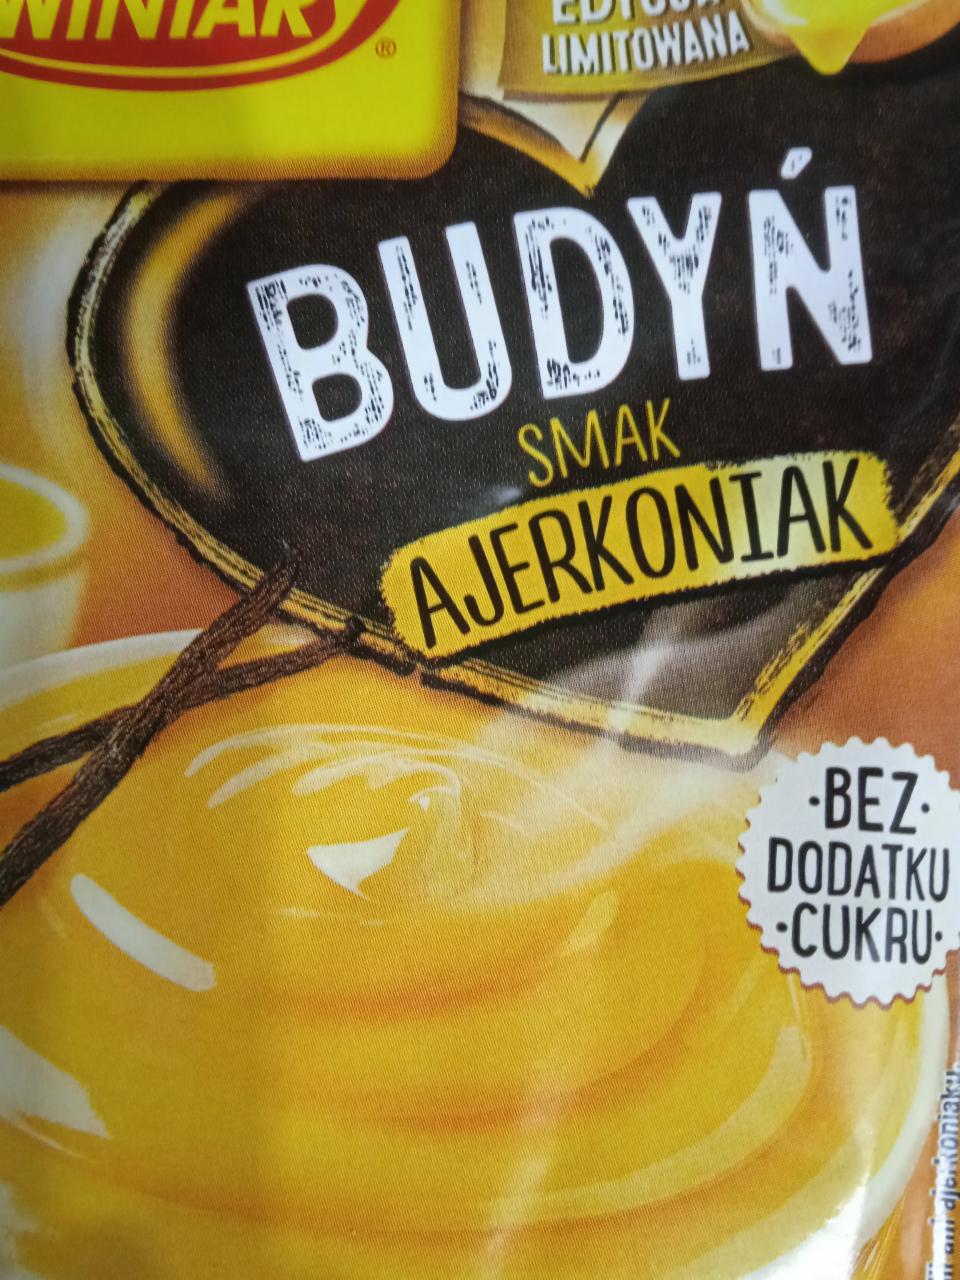 Zdjęcia - Budyń o smaku Ajerkoniaku bez cukru Wianiary